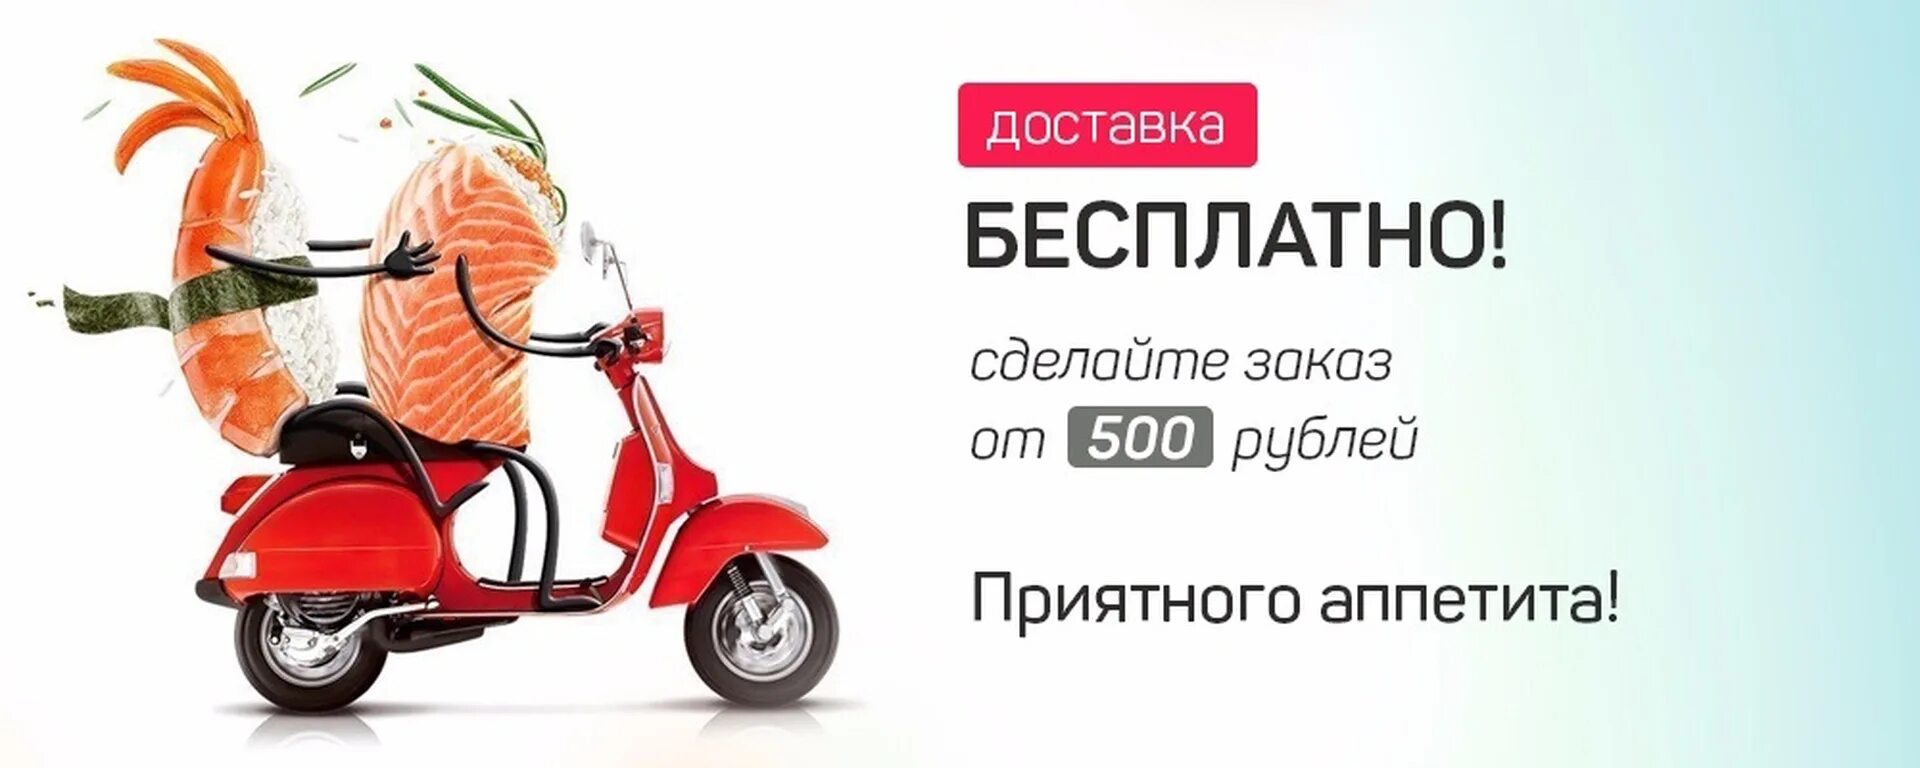 Бесплатная доставка. Бесплатная доставка от 500 рублей. Бесплатная доставка реклама.